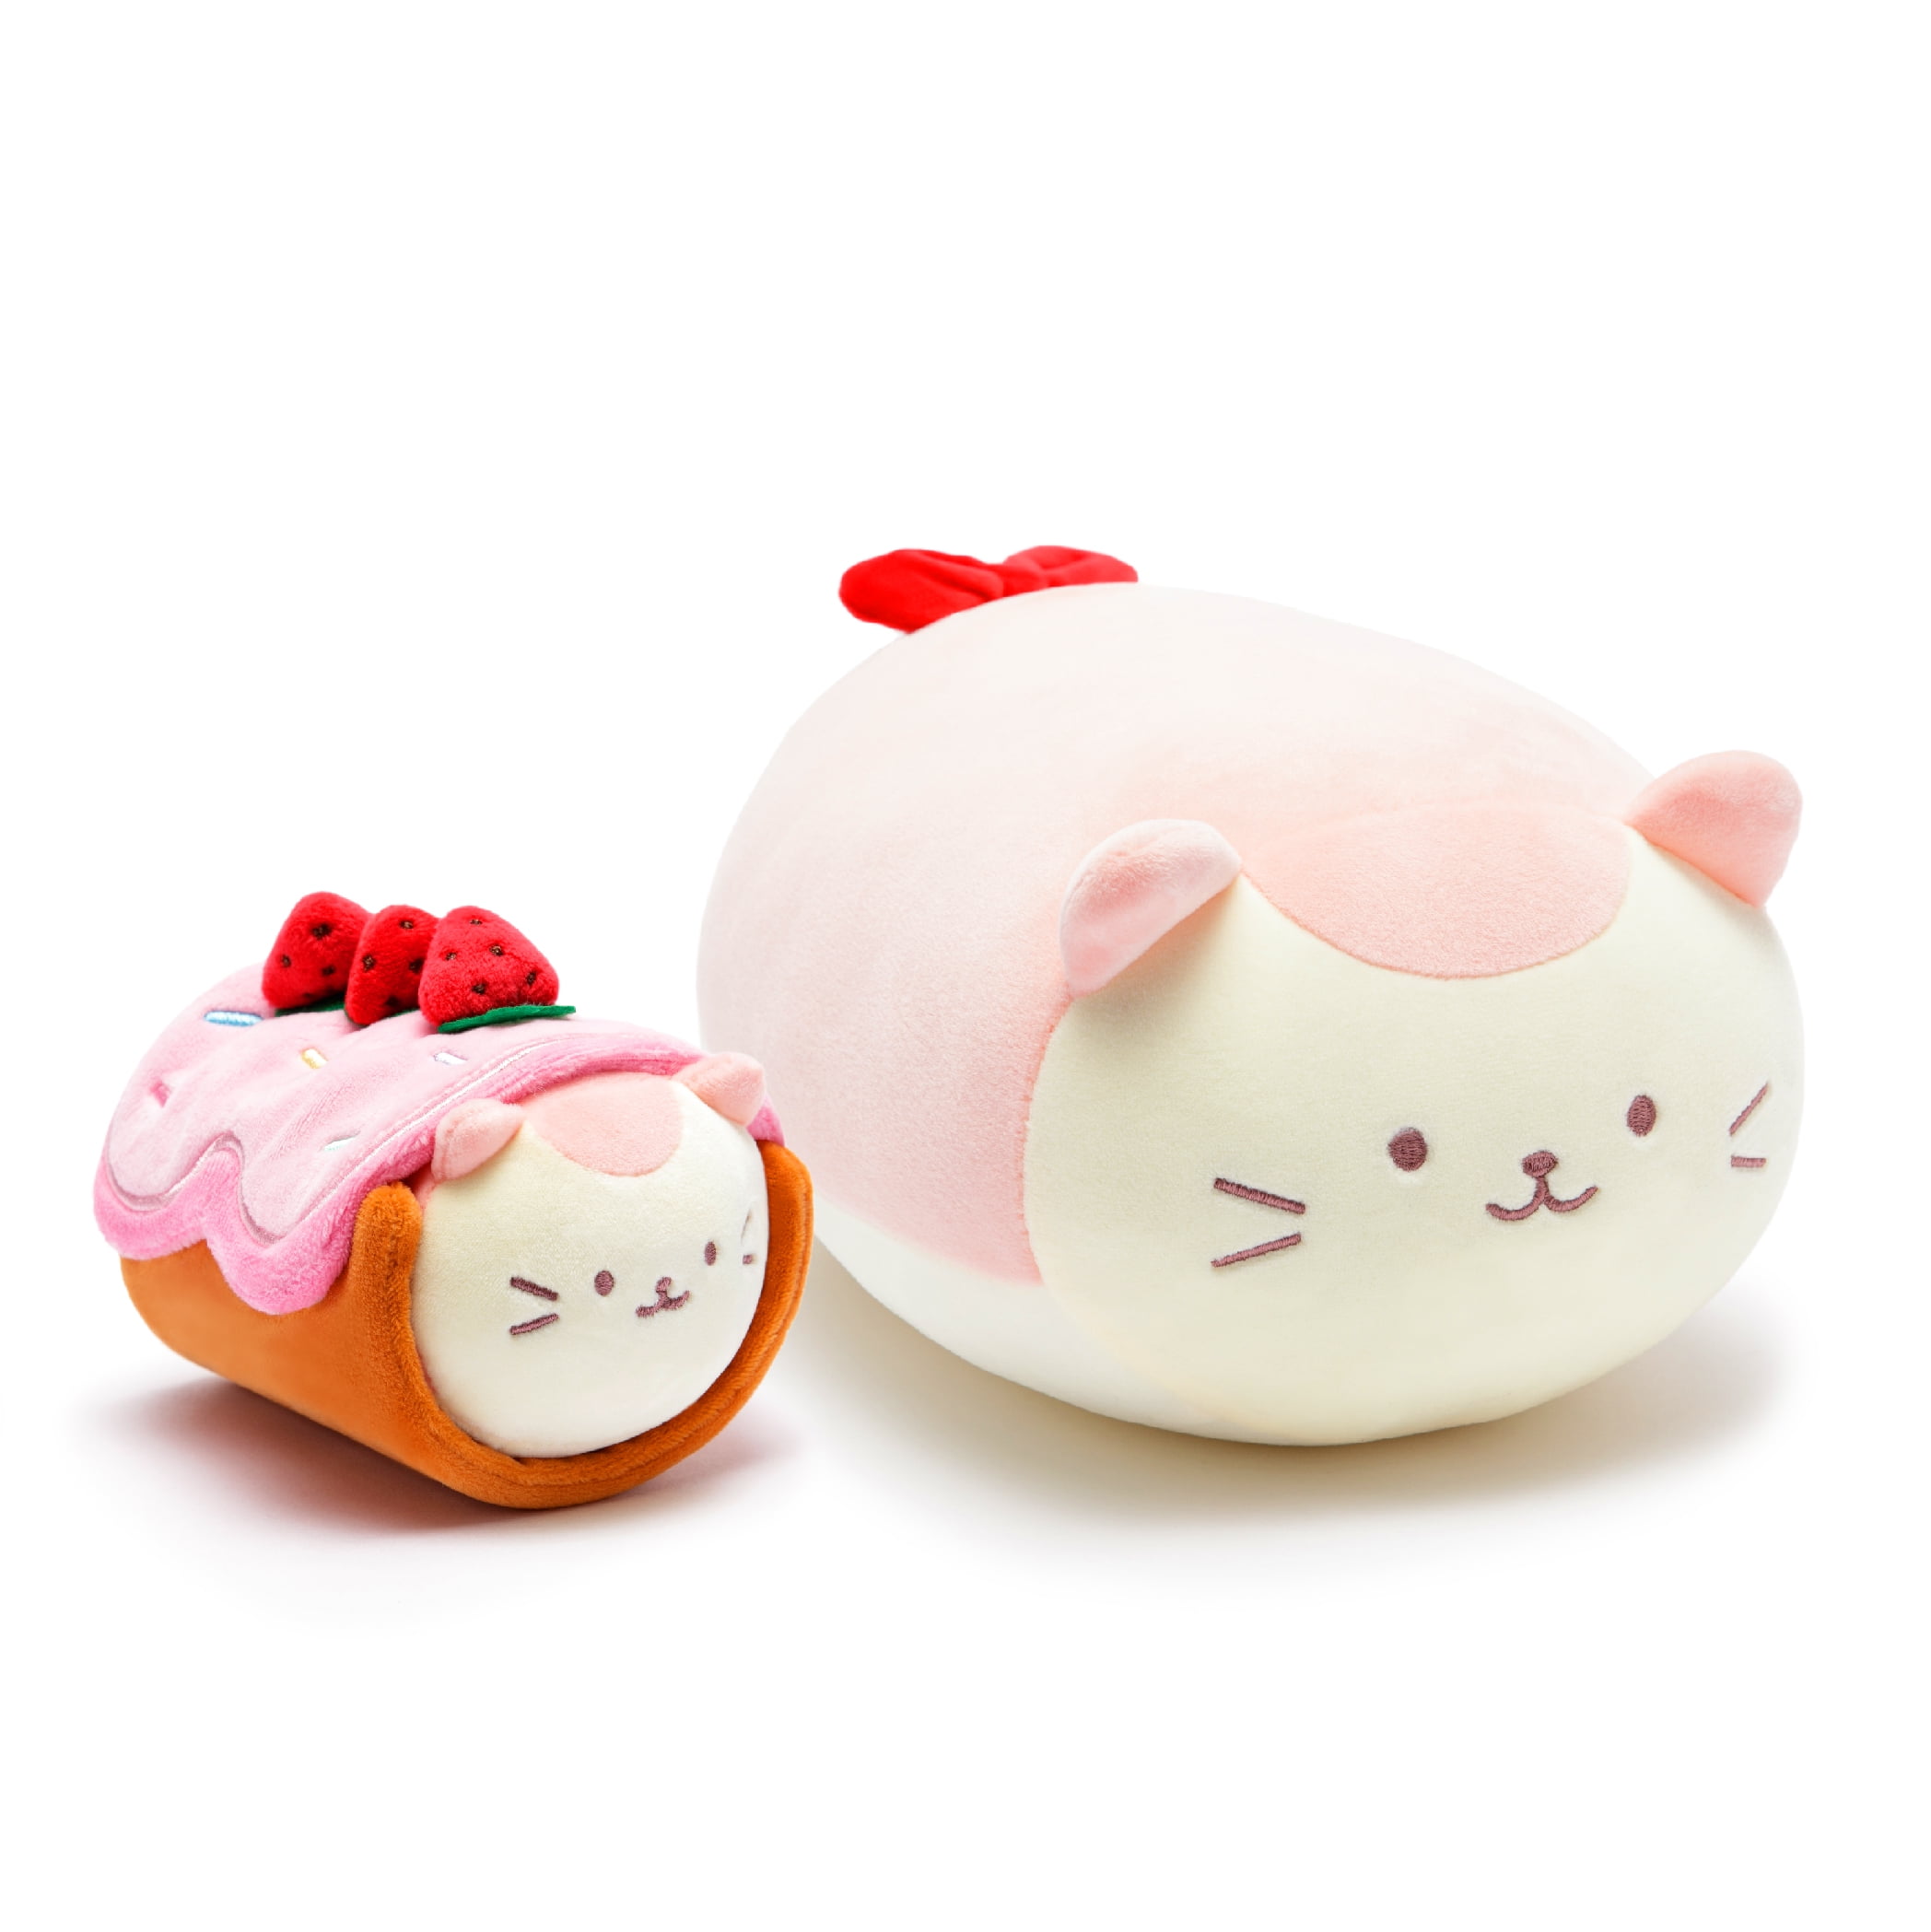 Anirollz Plush 2pcs Gift Set Kitty Strawberry Roll Cake Toy Kittiroll